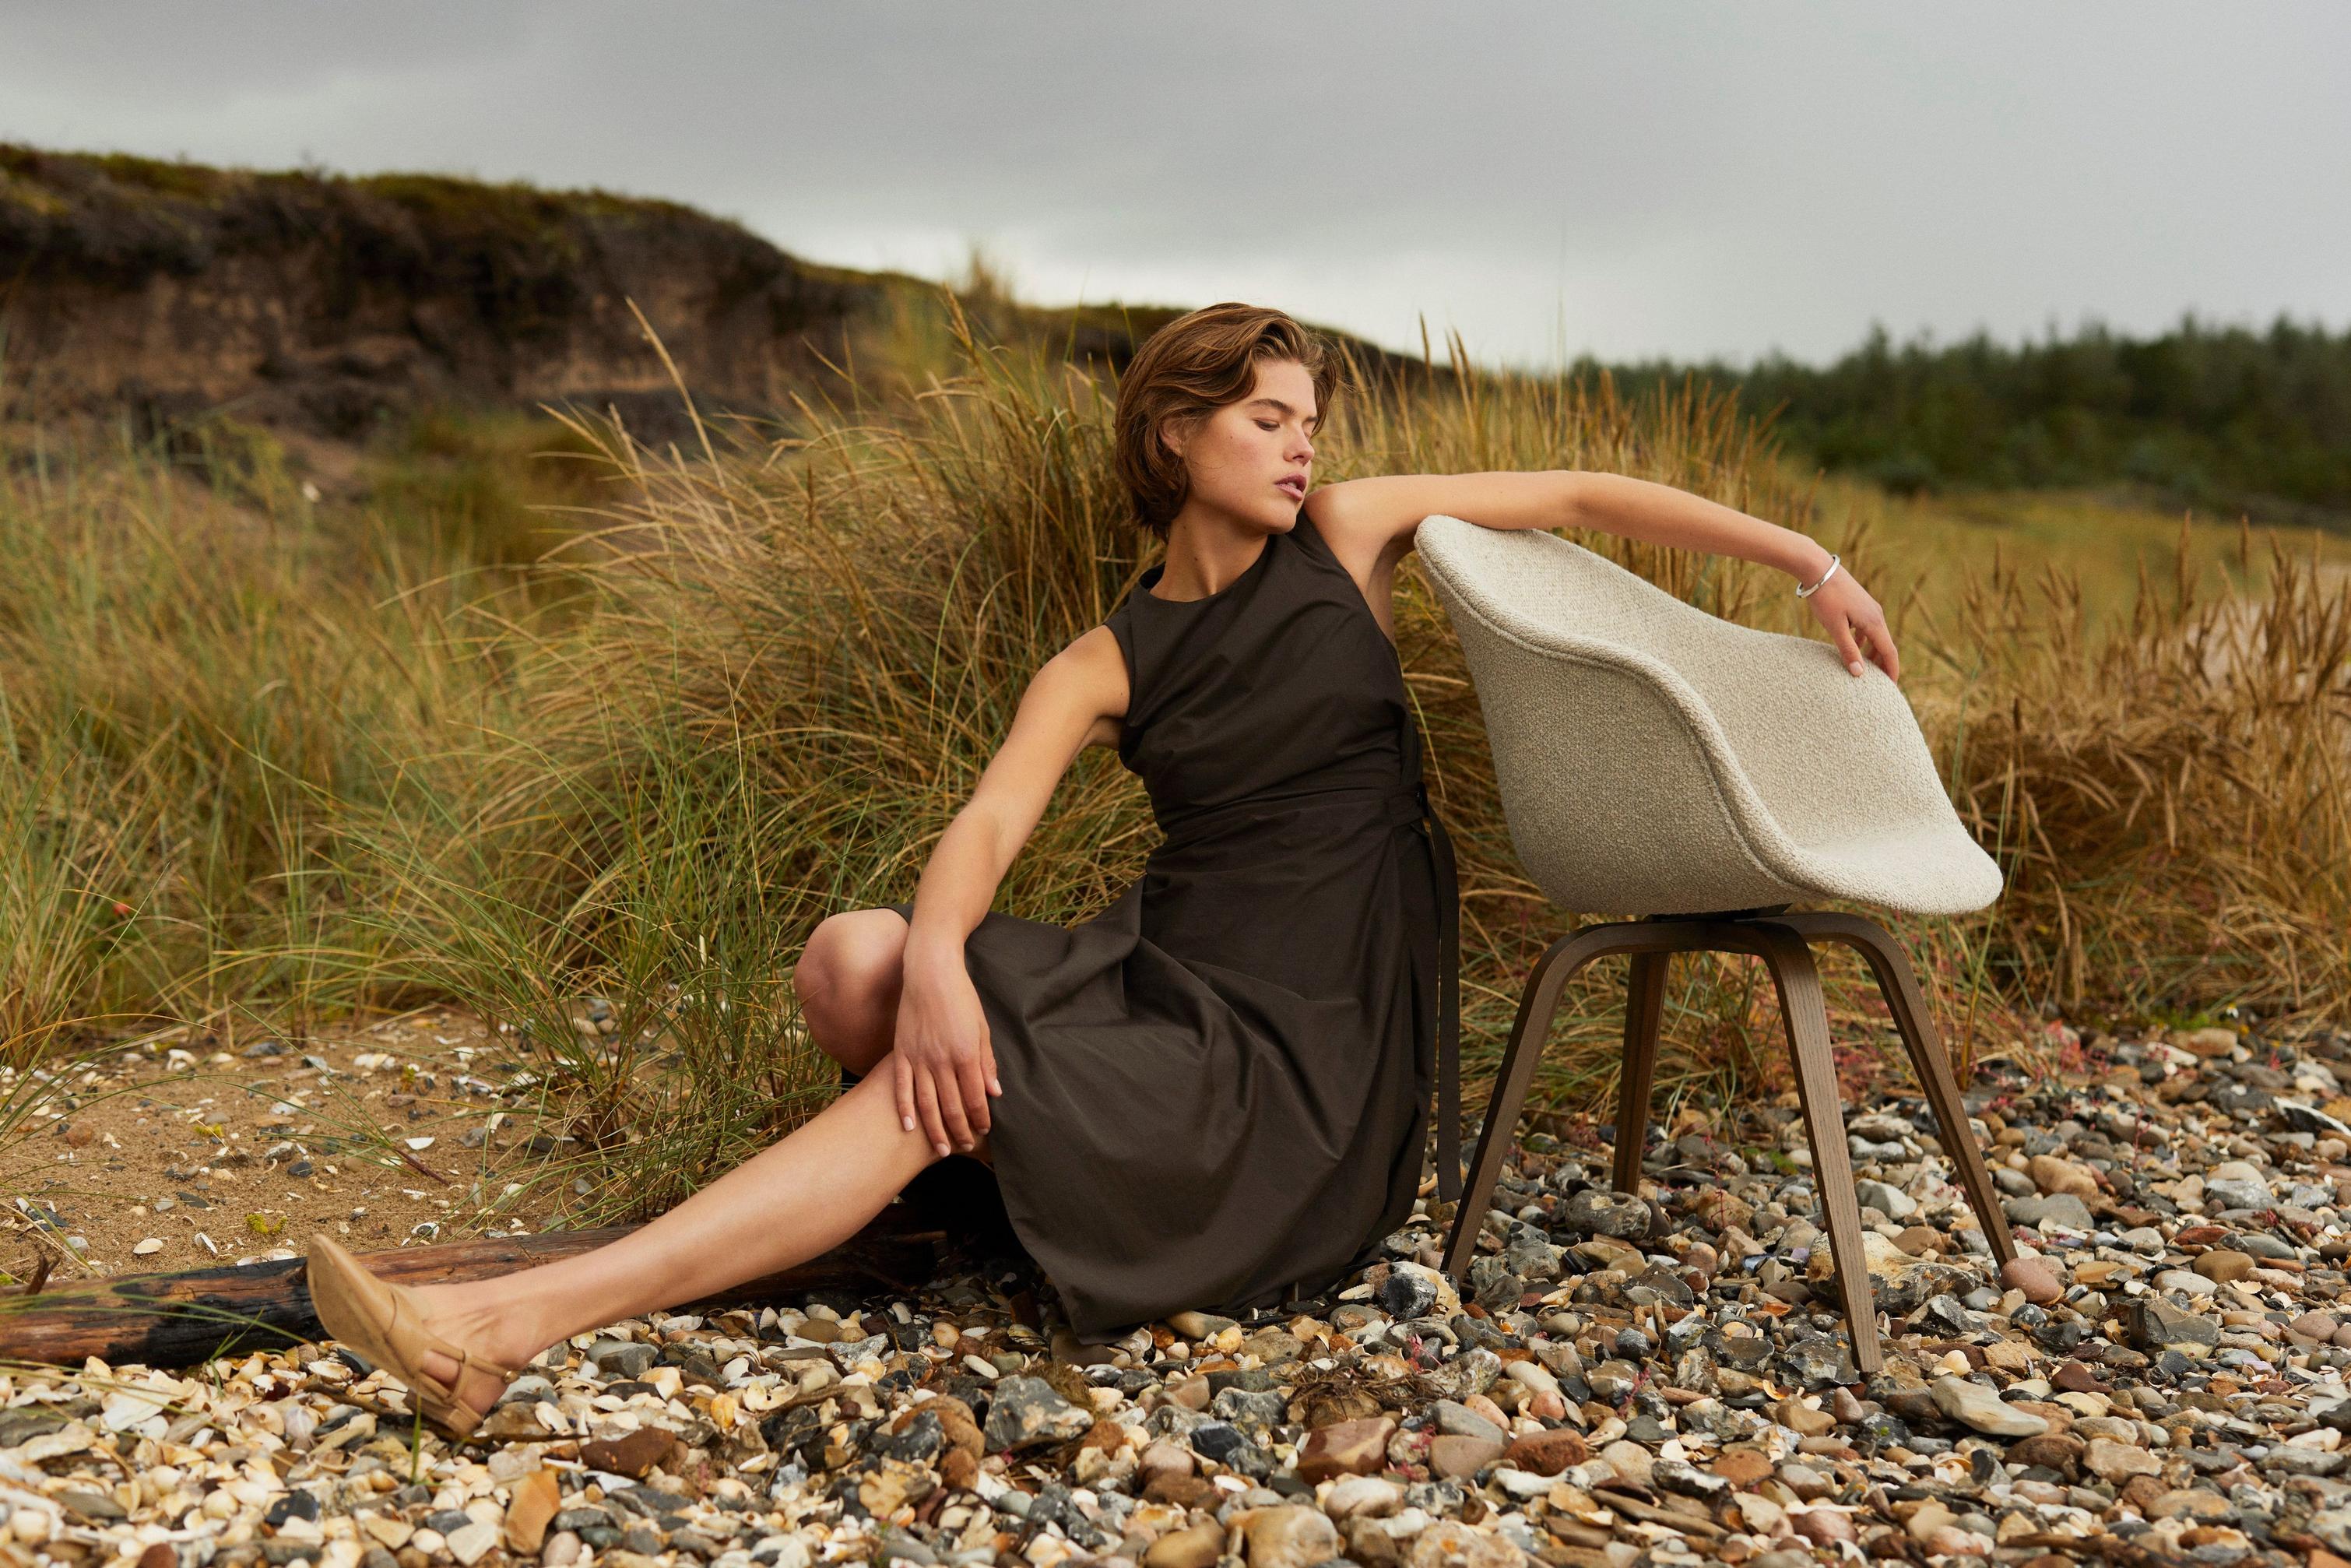 На поле возле пляжа женщина опирается на обеденный стул Hauge, обитый бежевой тканью Lazio.